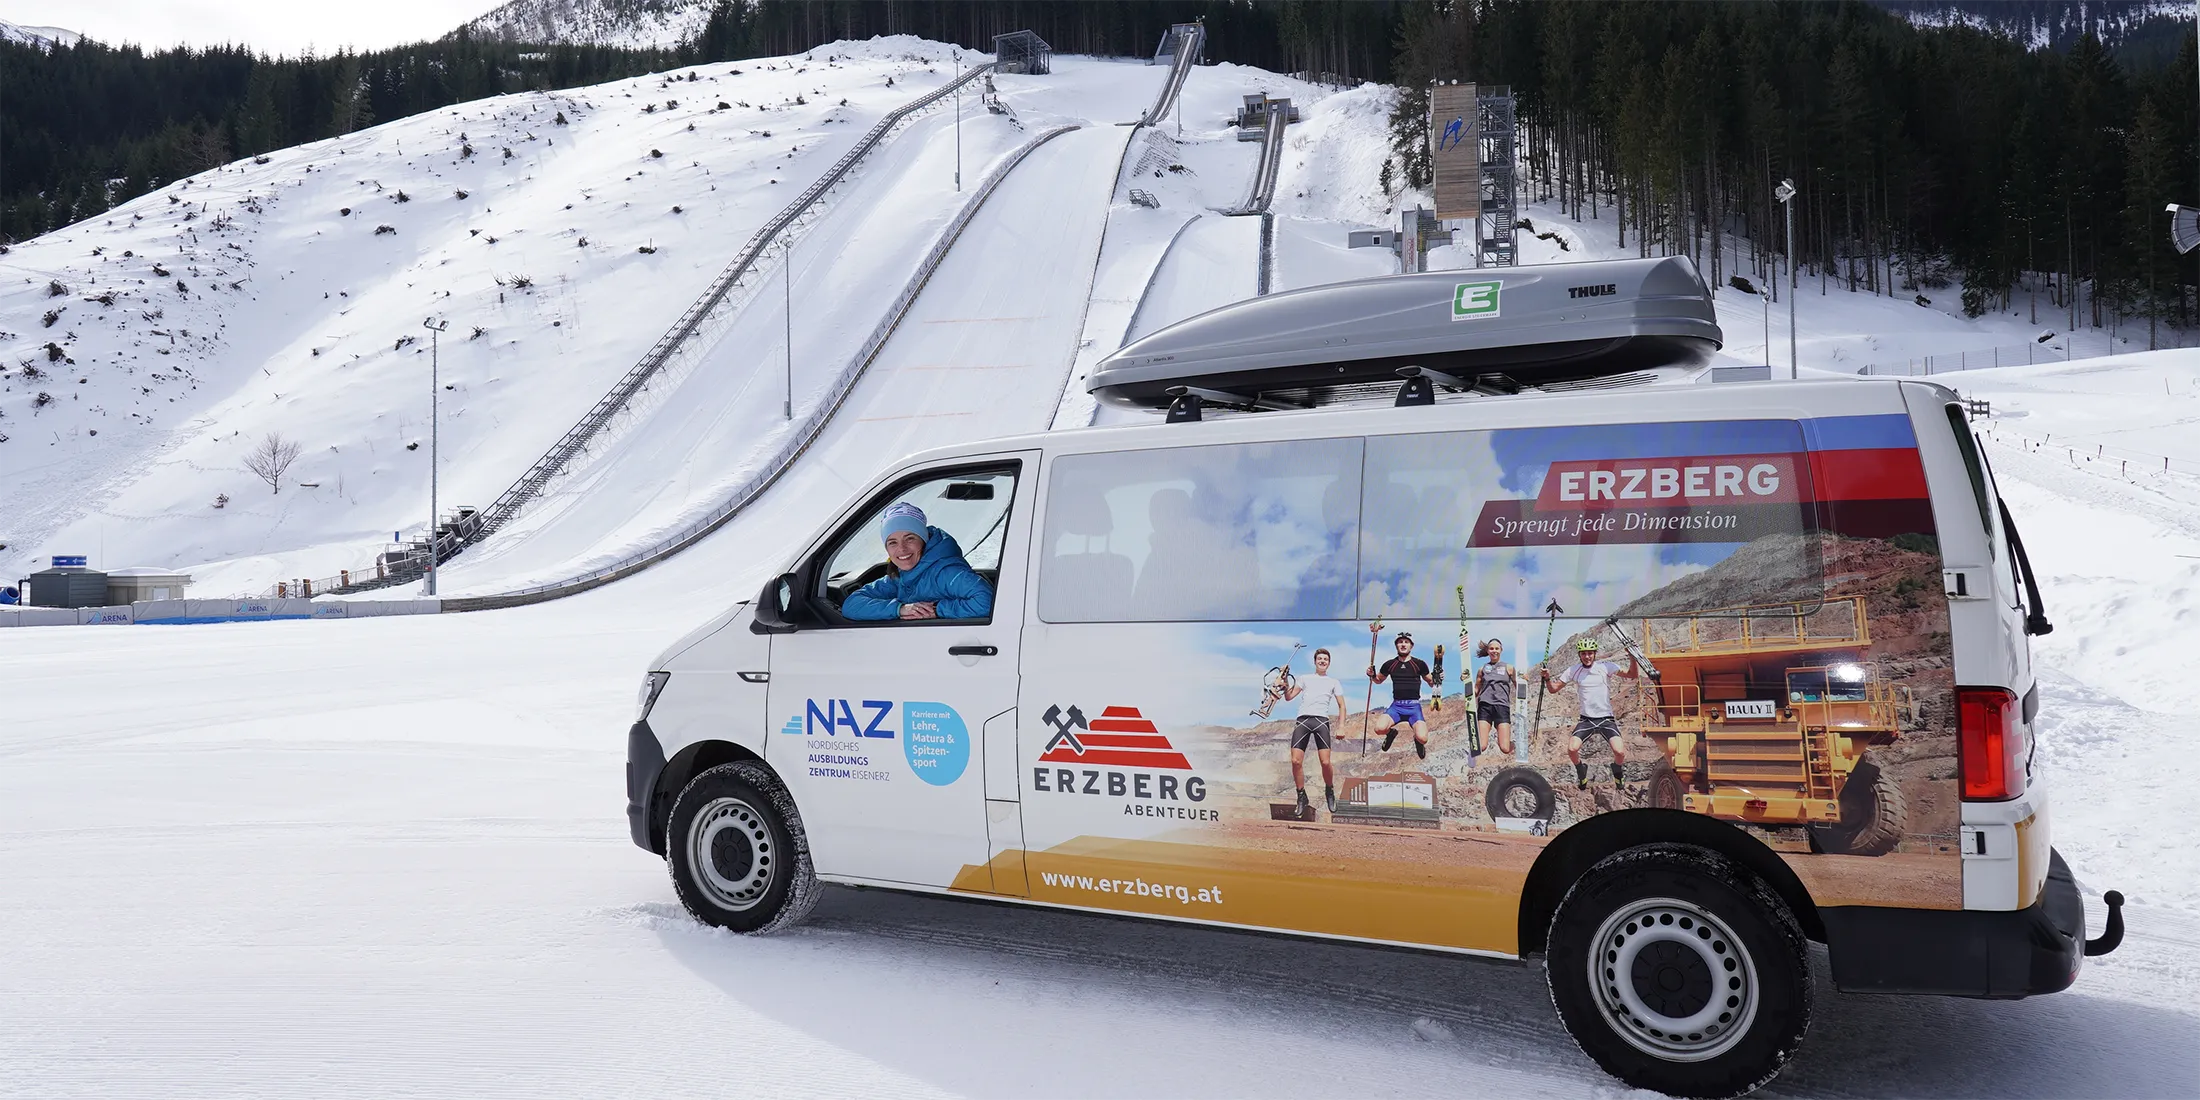 Weißer Minibus mit Erzberg-Werbung und NAZ-Logo, Dame schaut heraus, Schanze im Hintergrund.